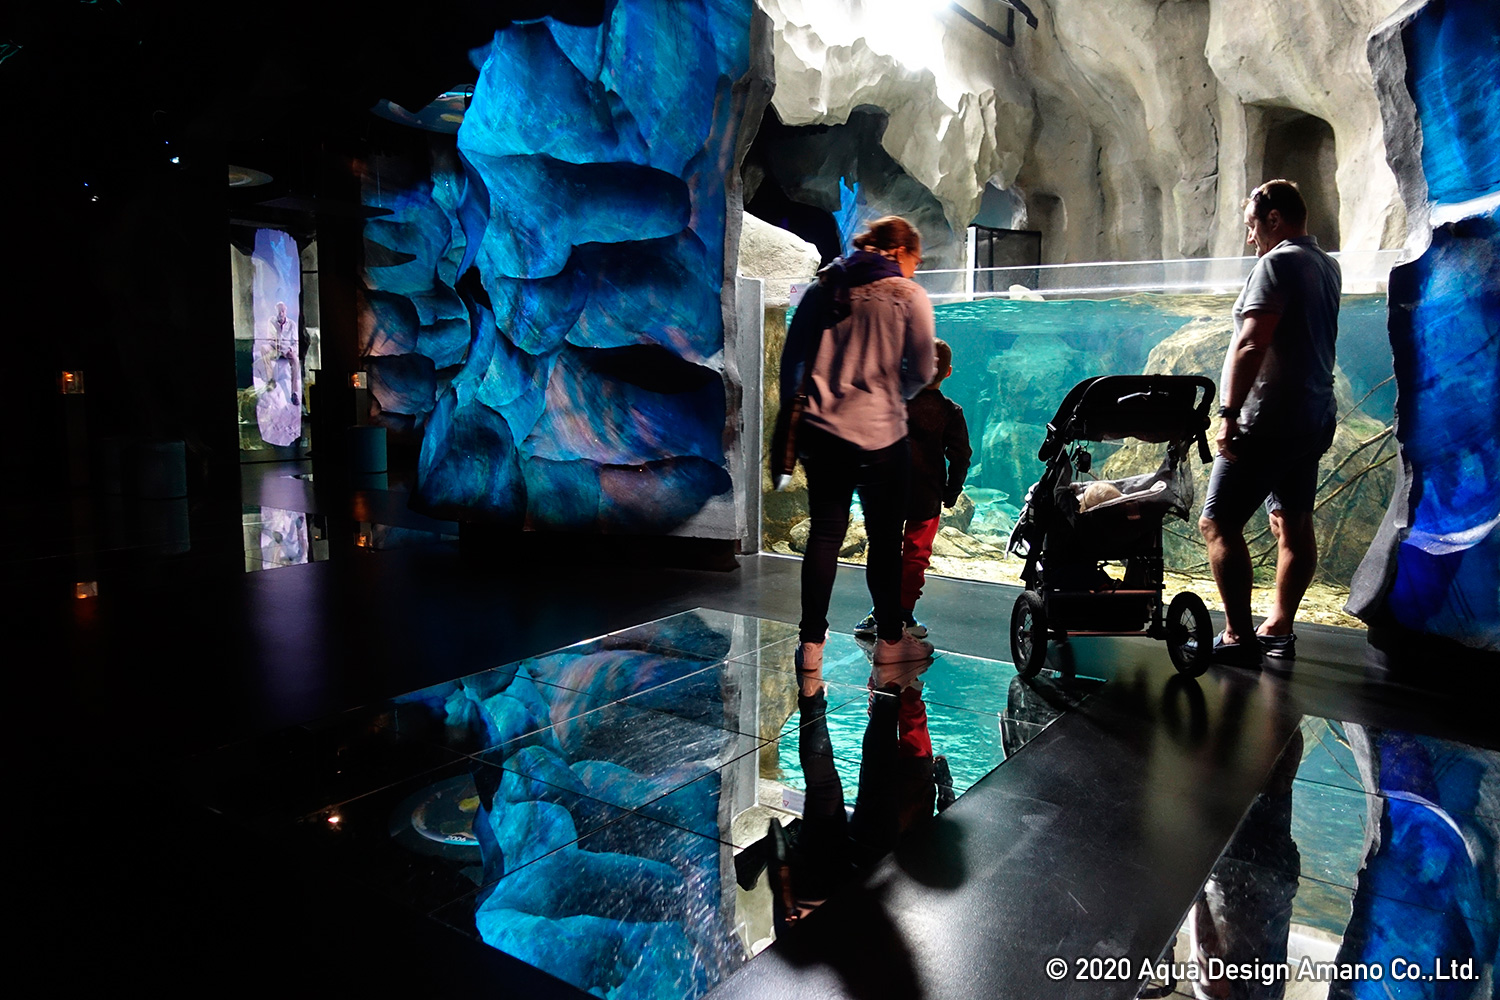 WORLD REPORT – Aquatis, the largest freshwater aquarium in Europe